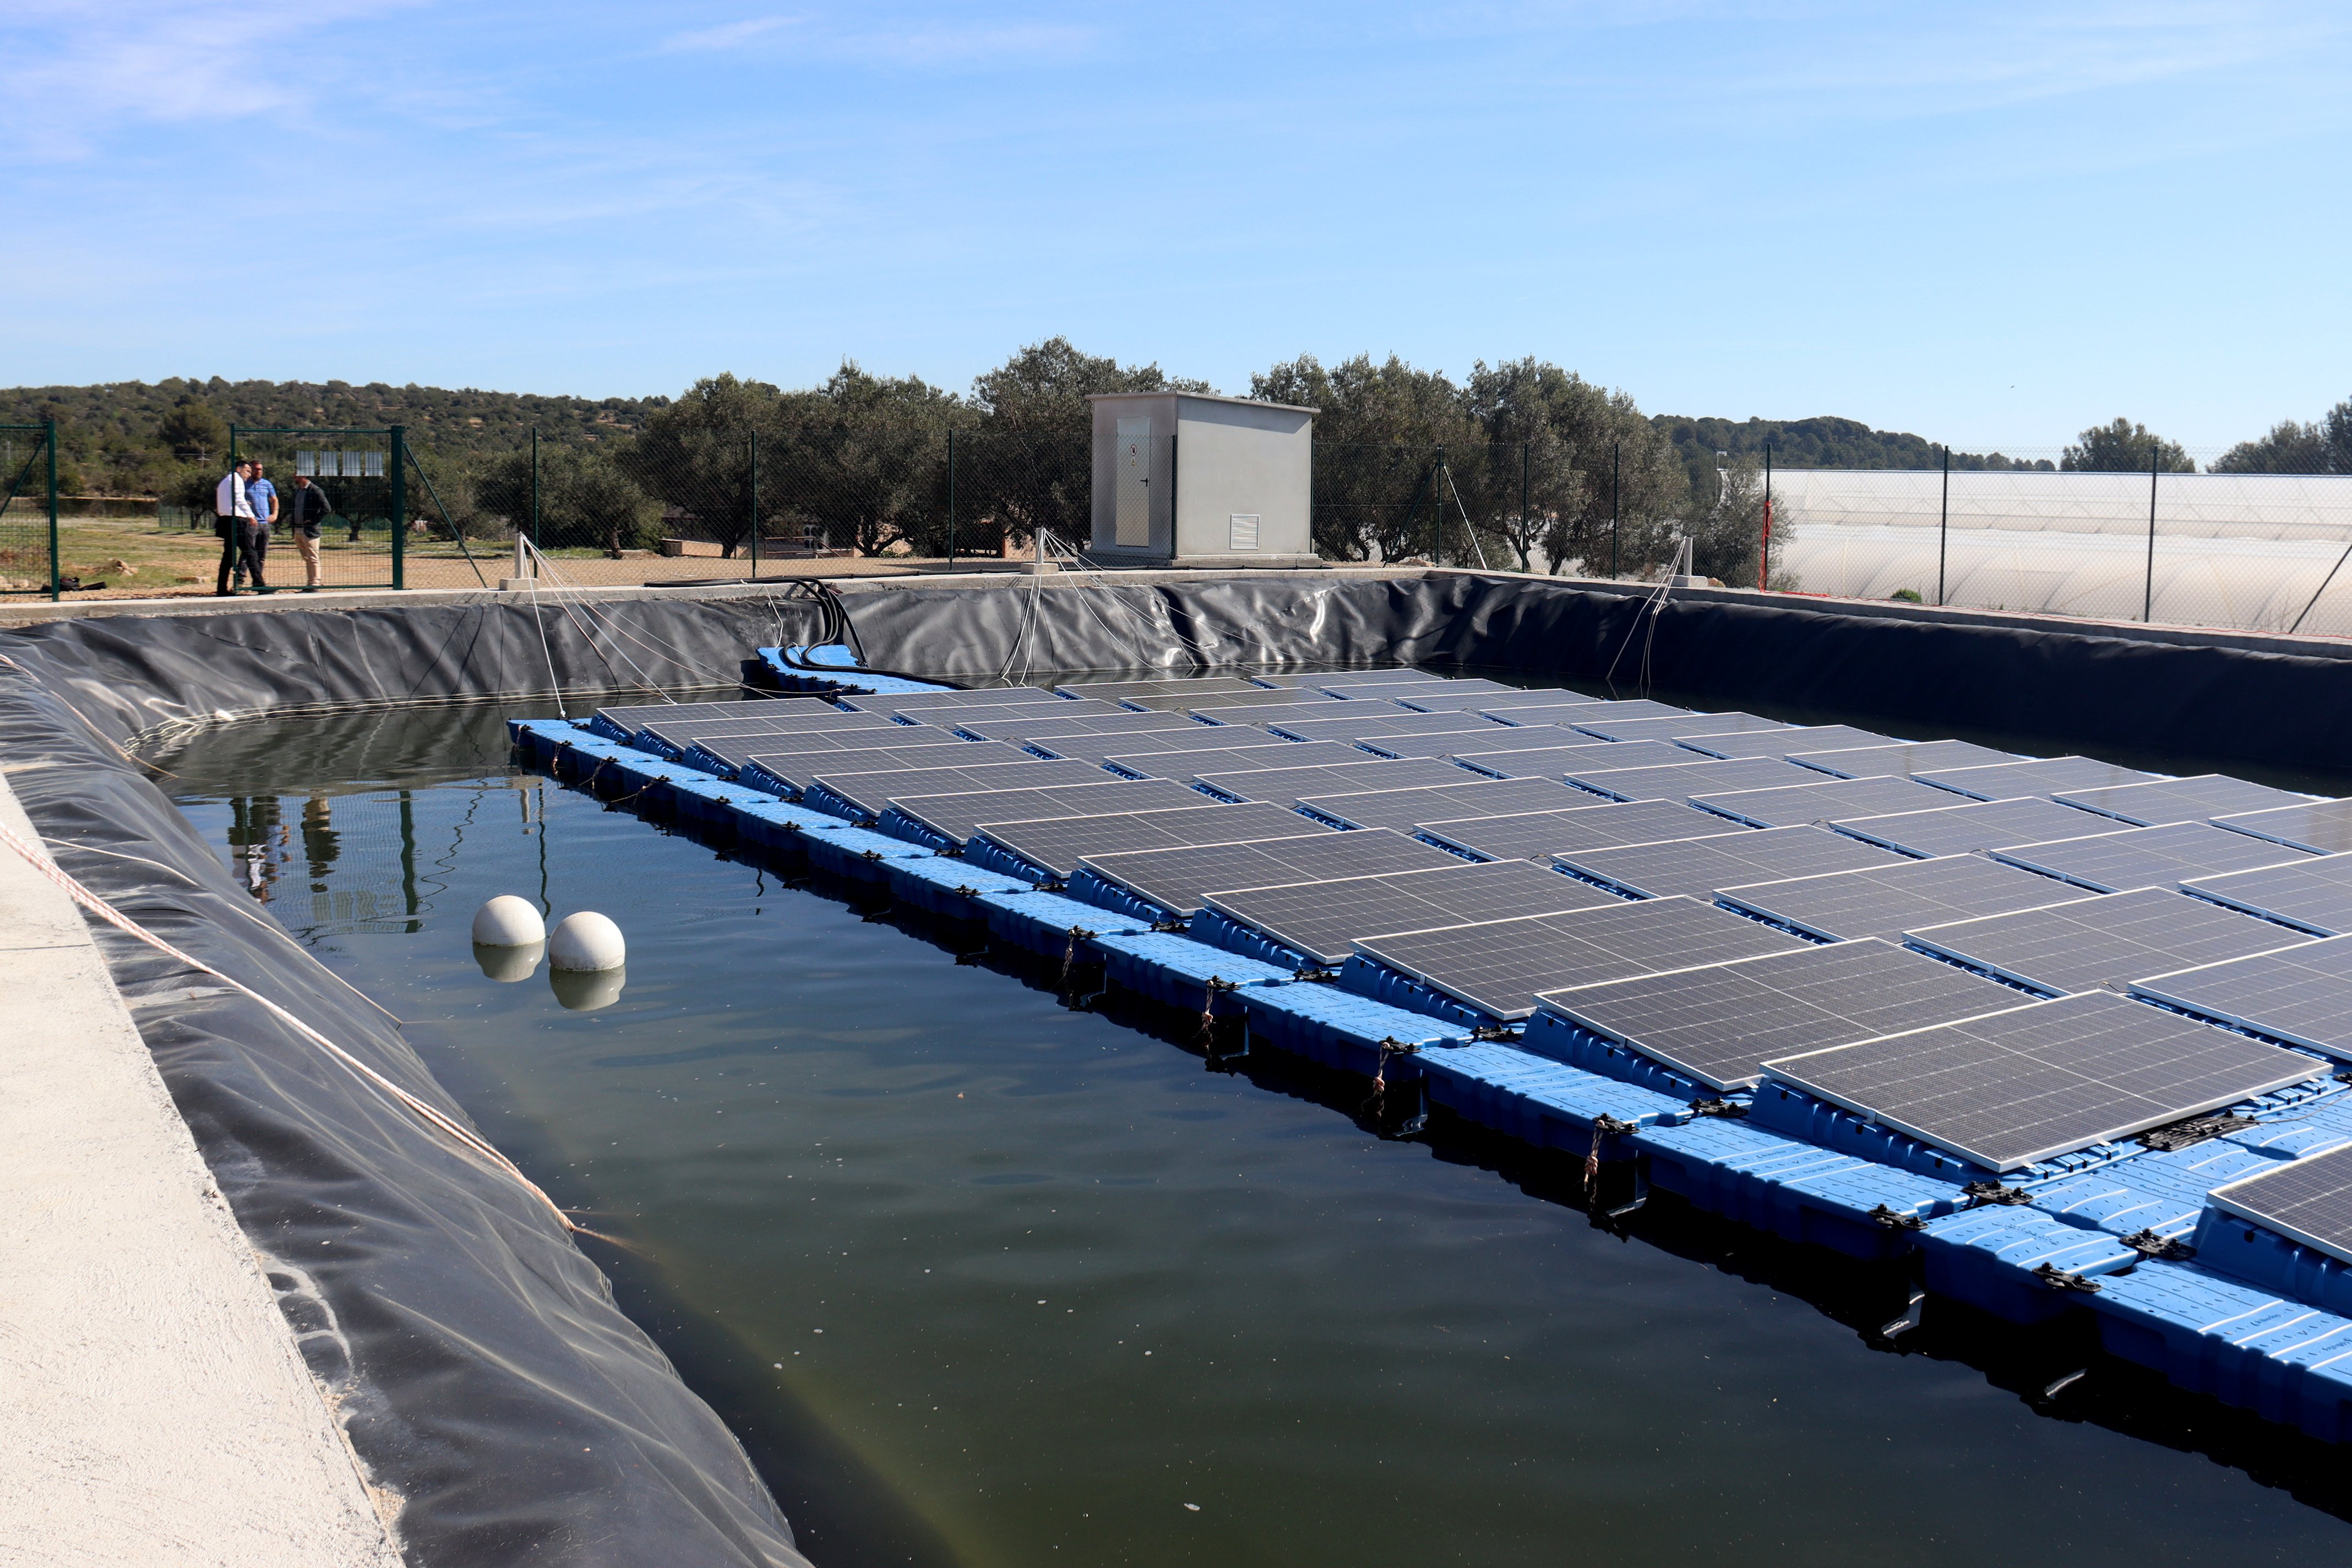 Fotovoltaica flotante: las primeras placas sobre el agua en Catalunya que podrían dar luz a 43 hogares